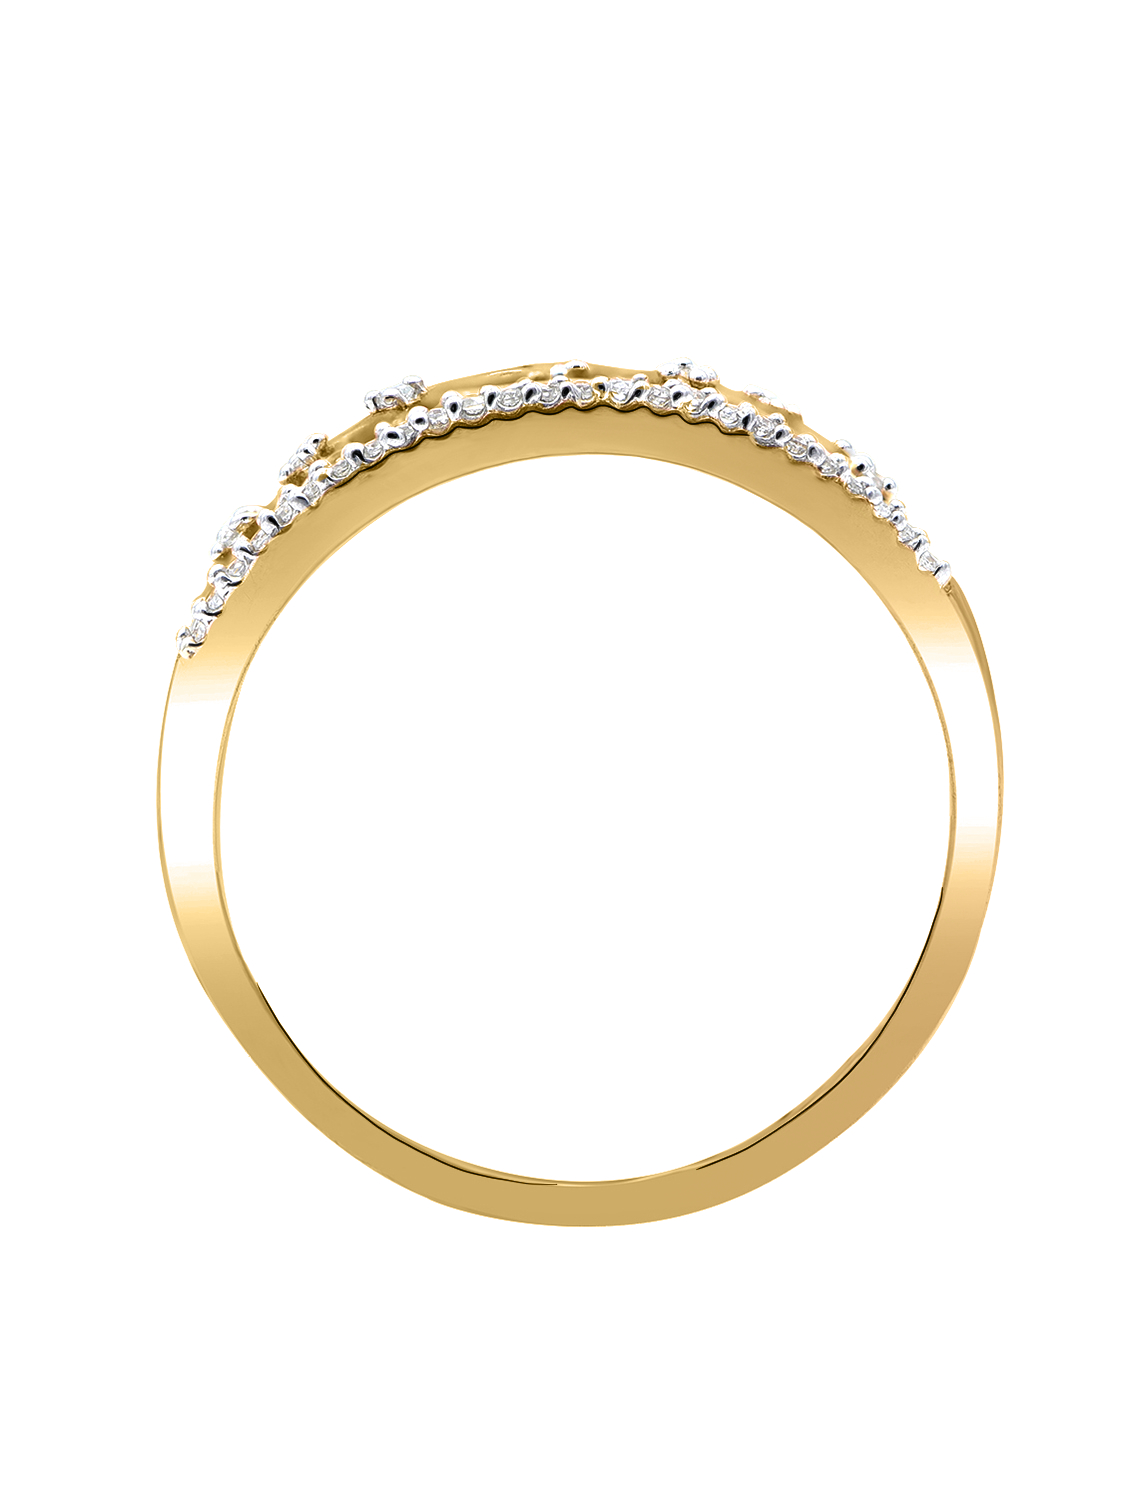 Mirella - Ring mit Diamanten 585 Gelbgold - 0,17ct. - Größe 62